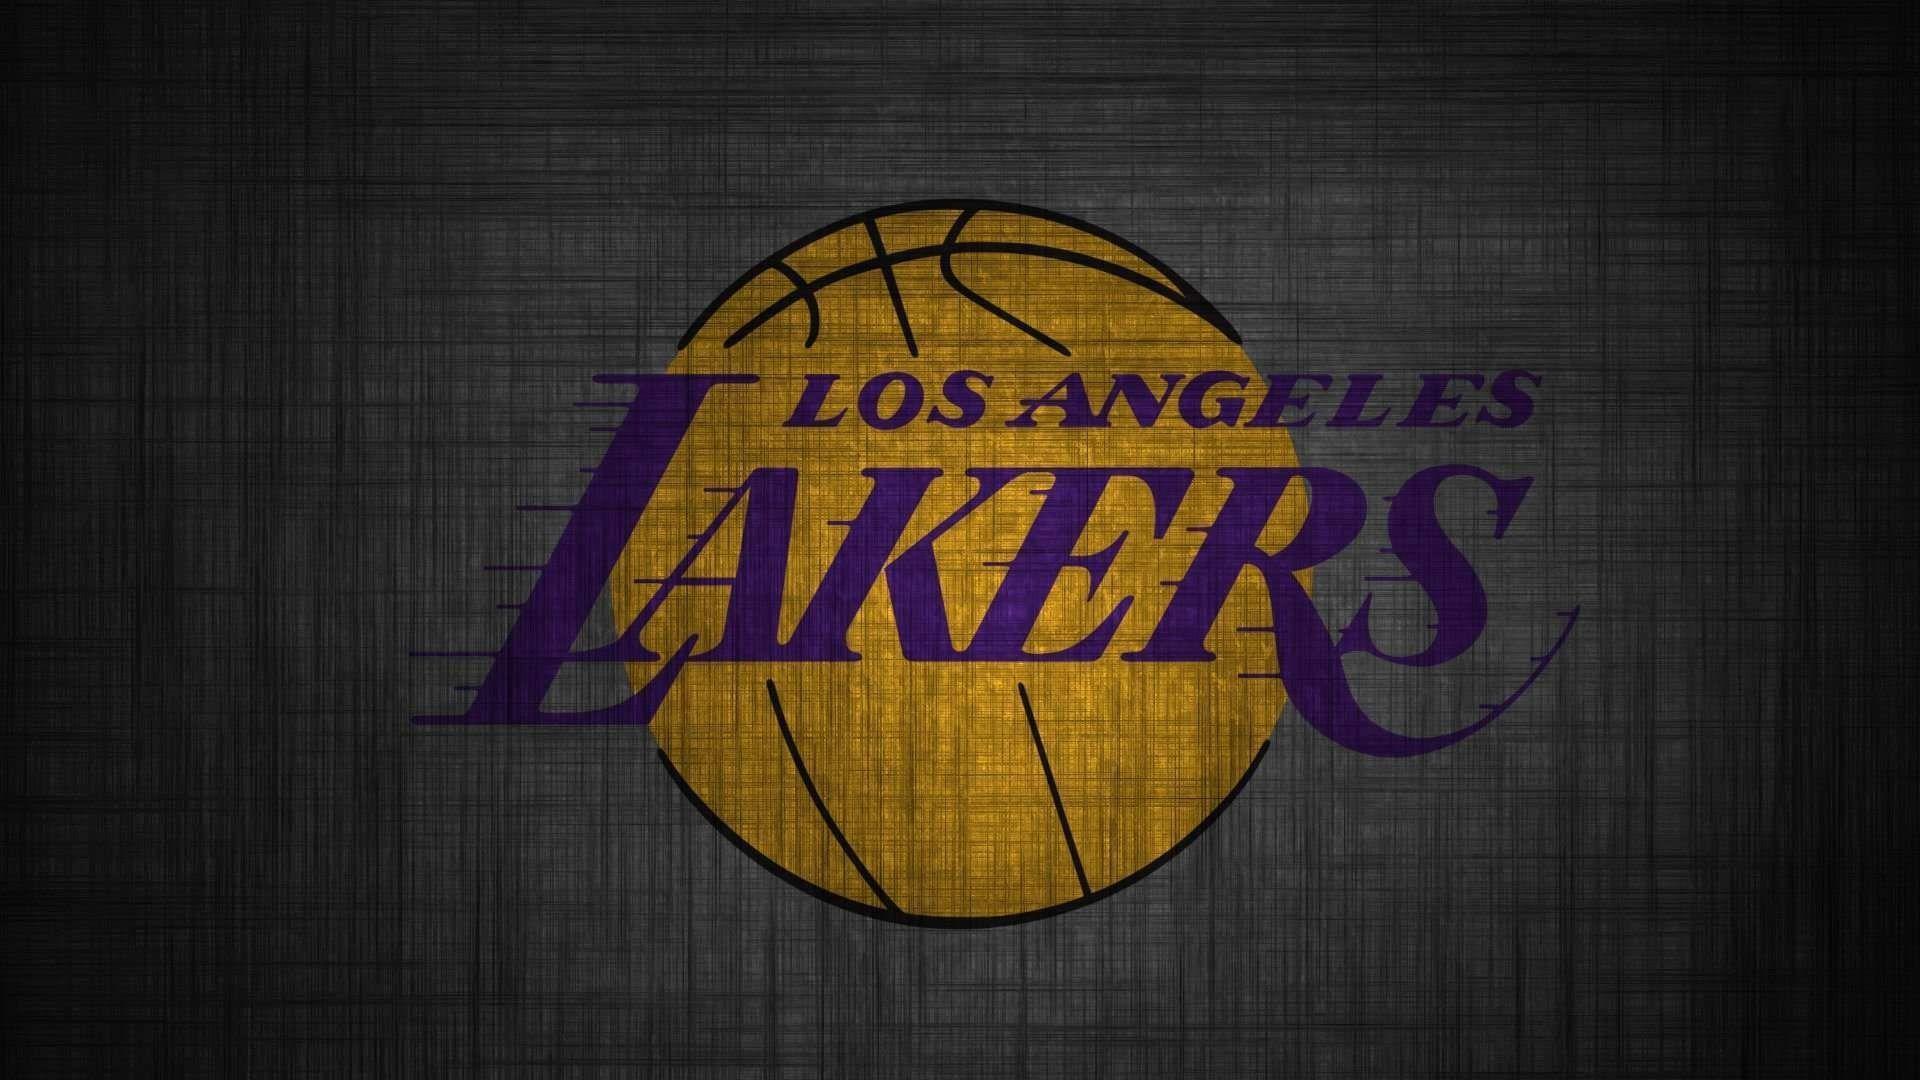 Lakers Wallpaper Best Of Los Angeles Lakers 2017 Logo Wallpaper atl3